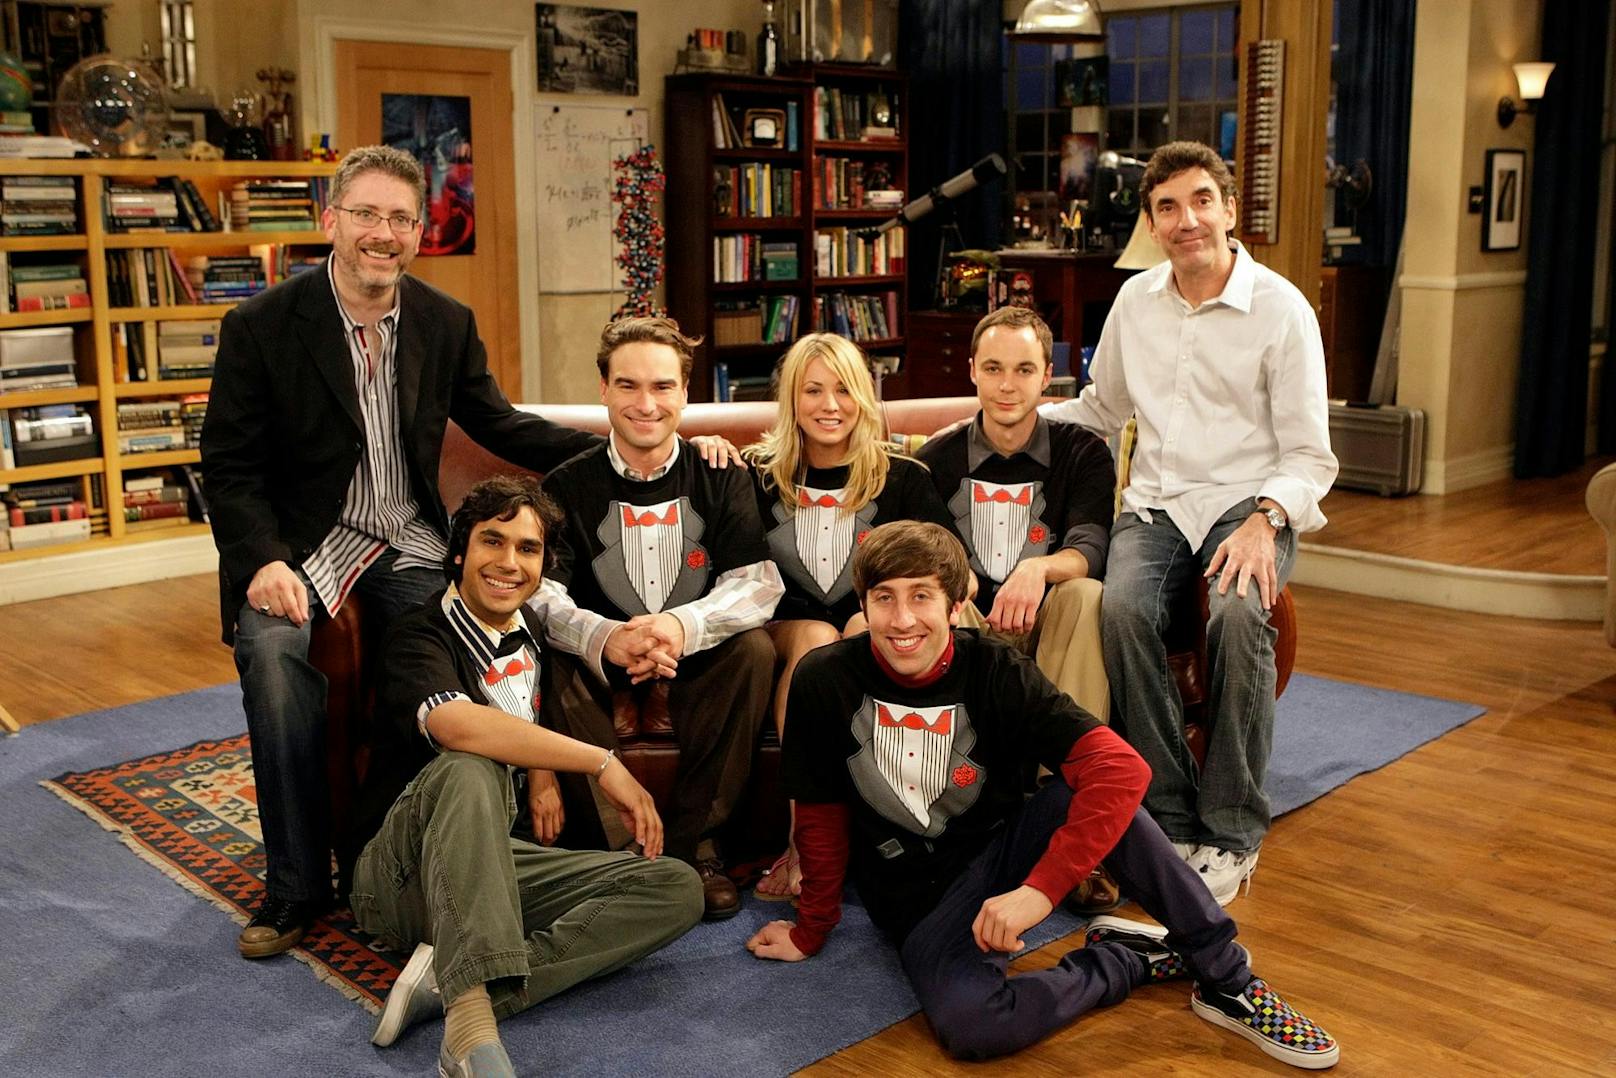 15 Jahre lang brachten sie Zuschauerinnen und Zuschauer zum Lachen – der Cast von "The Big Bang Theory".